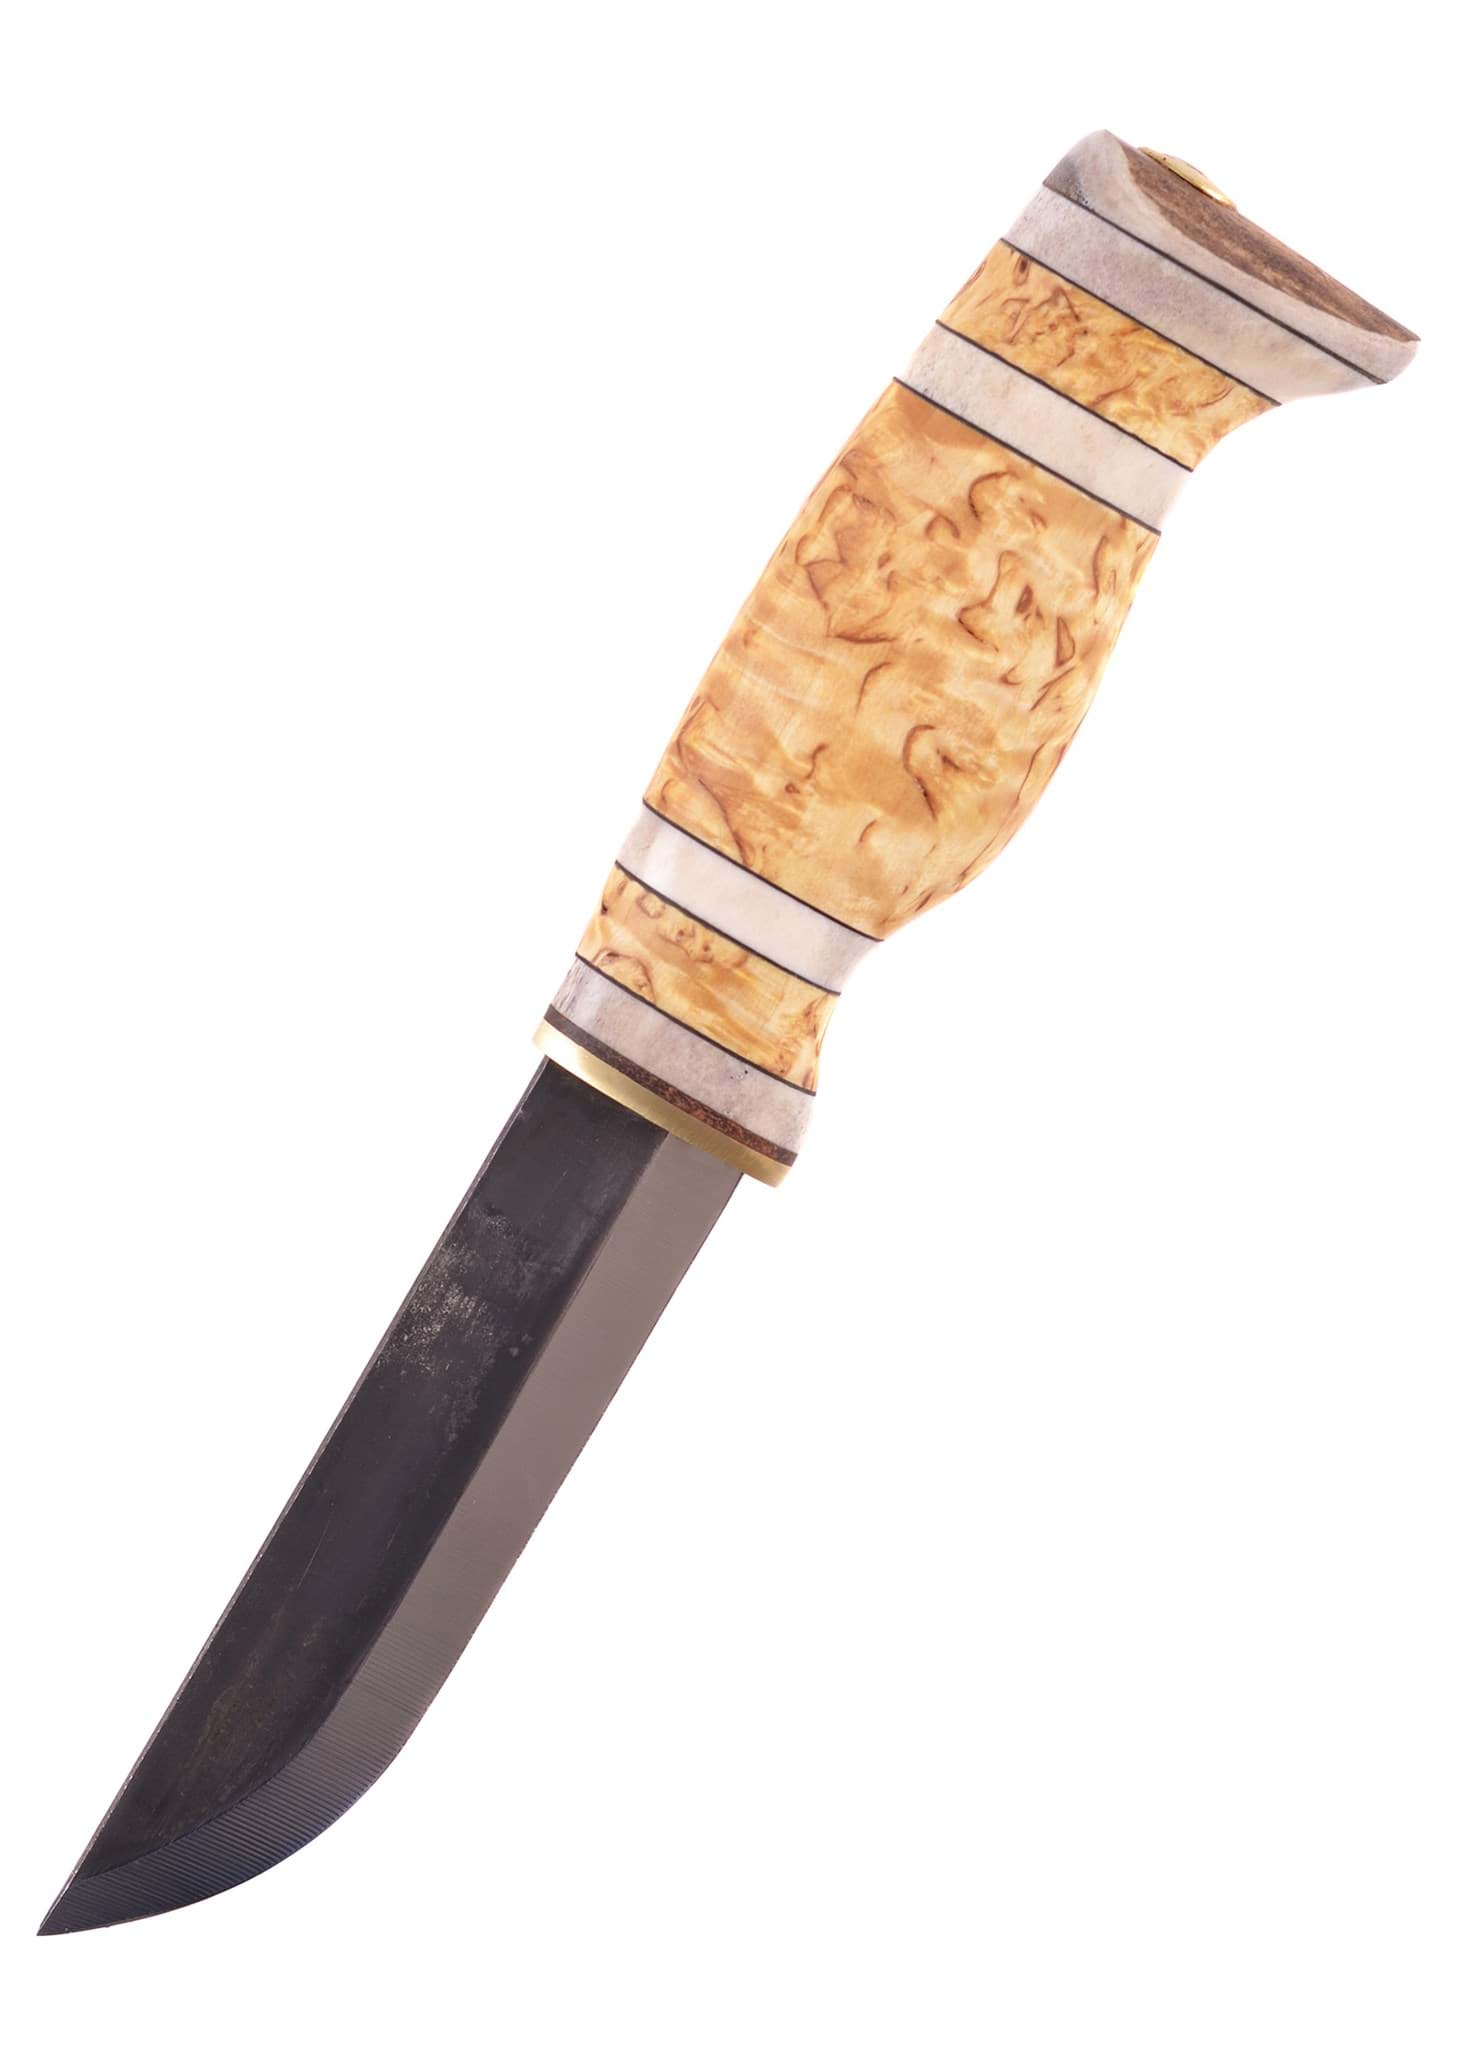 Image de Wood Jewel - Couteau de chasse en bouleau madré